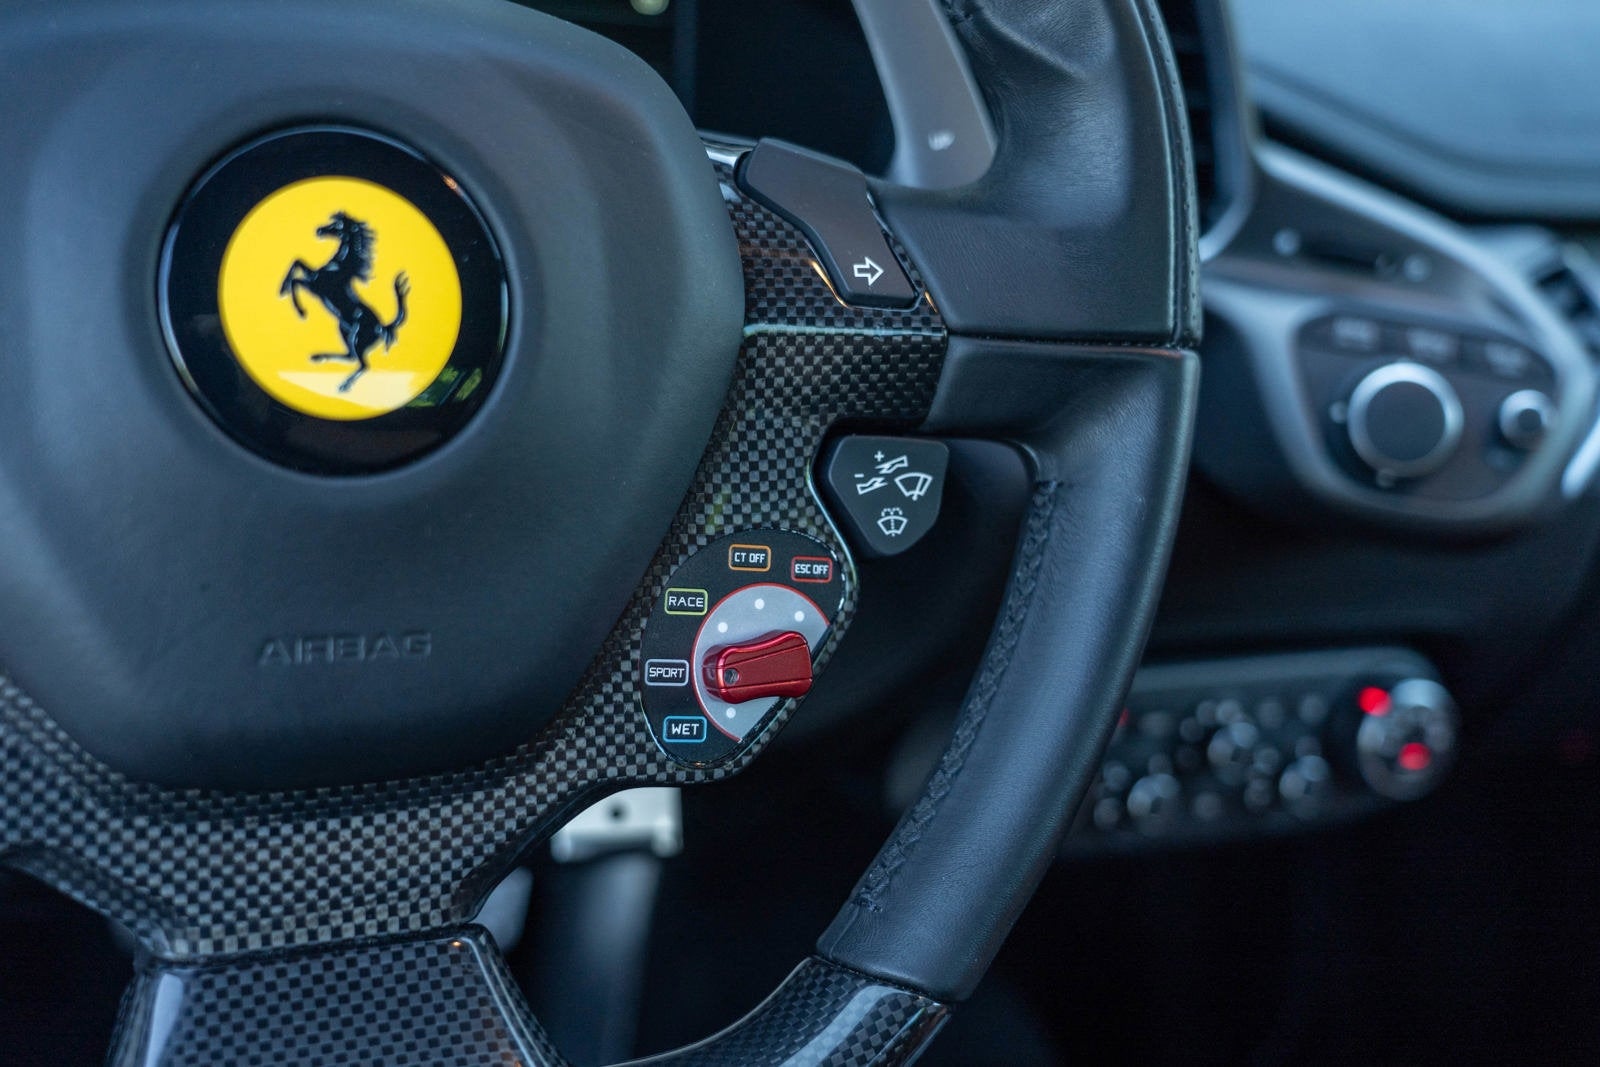 2015 Ferrari 458 Italia 2DR CPE